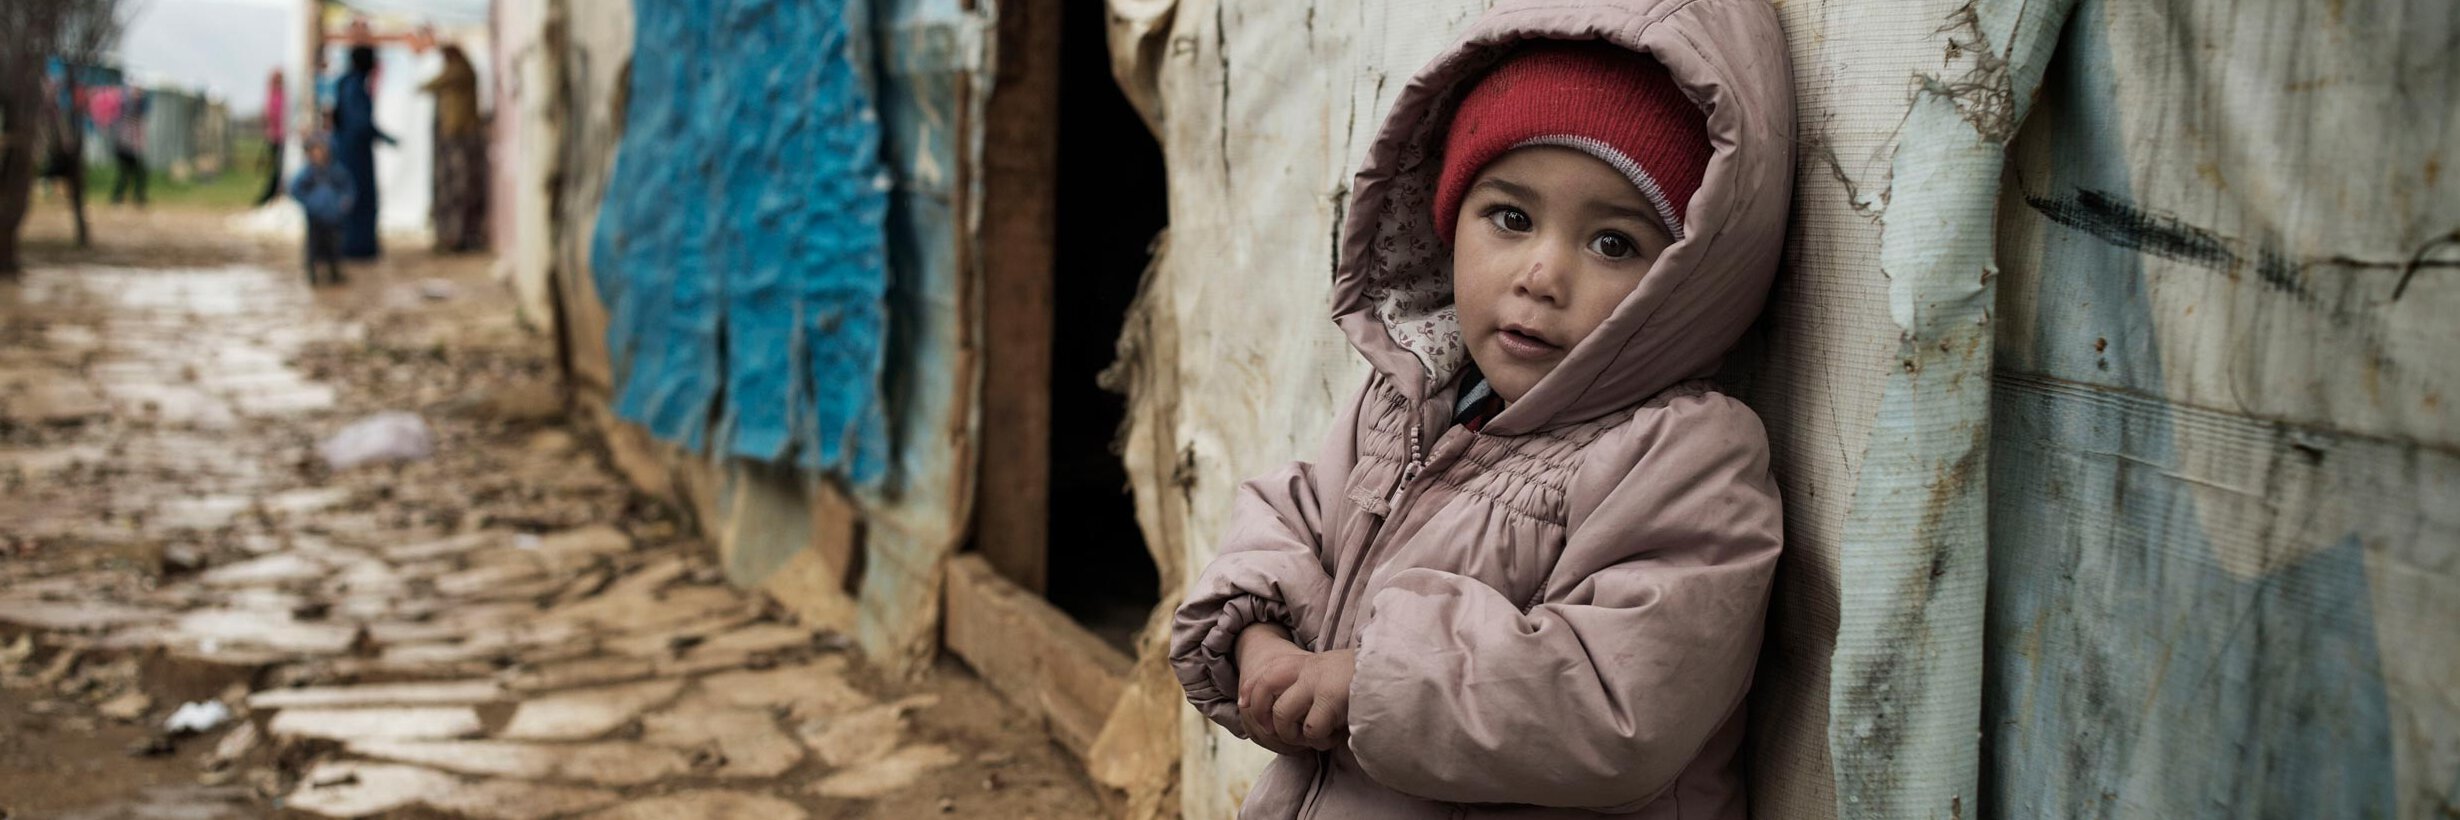 Mädchen in Winterkleidung in einem Flüchtlingslager